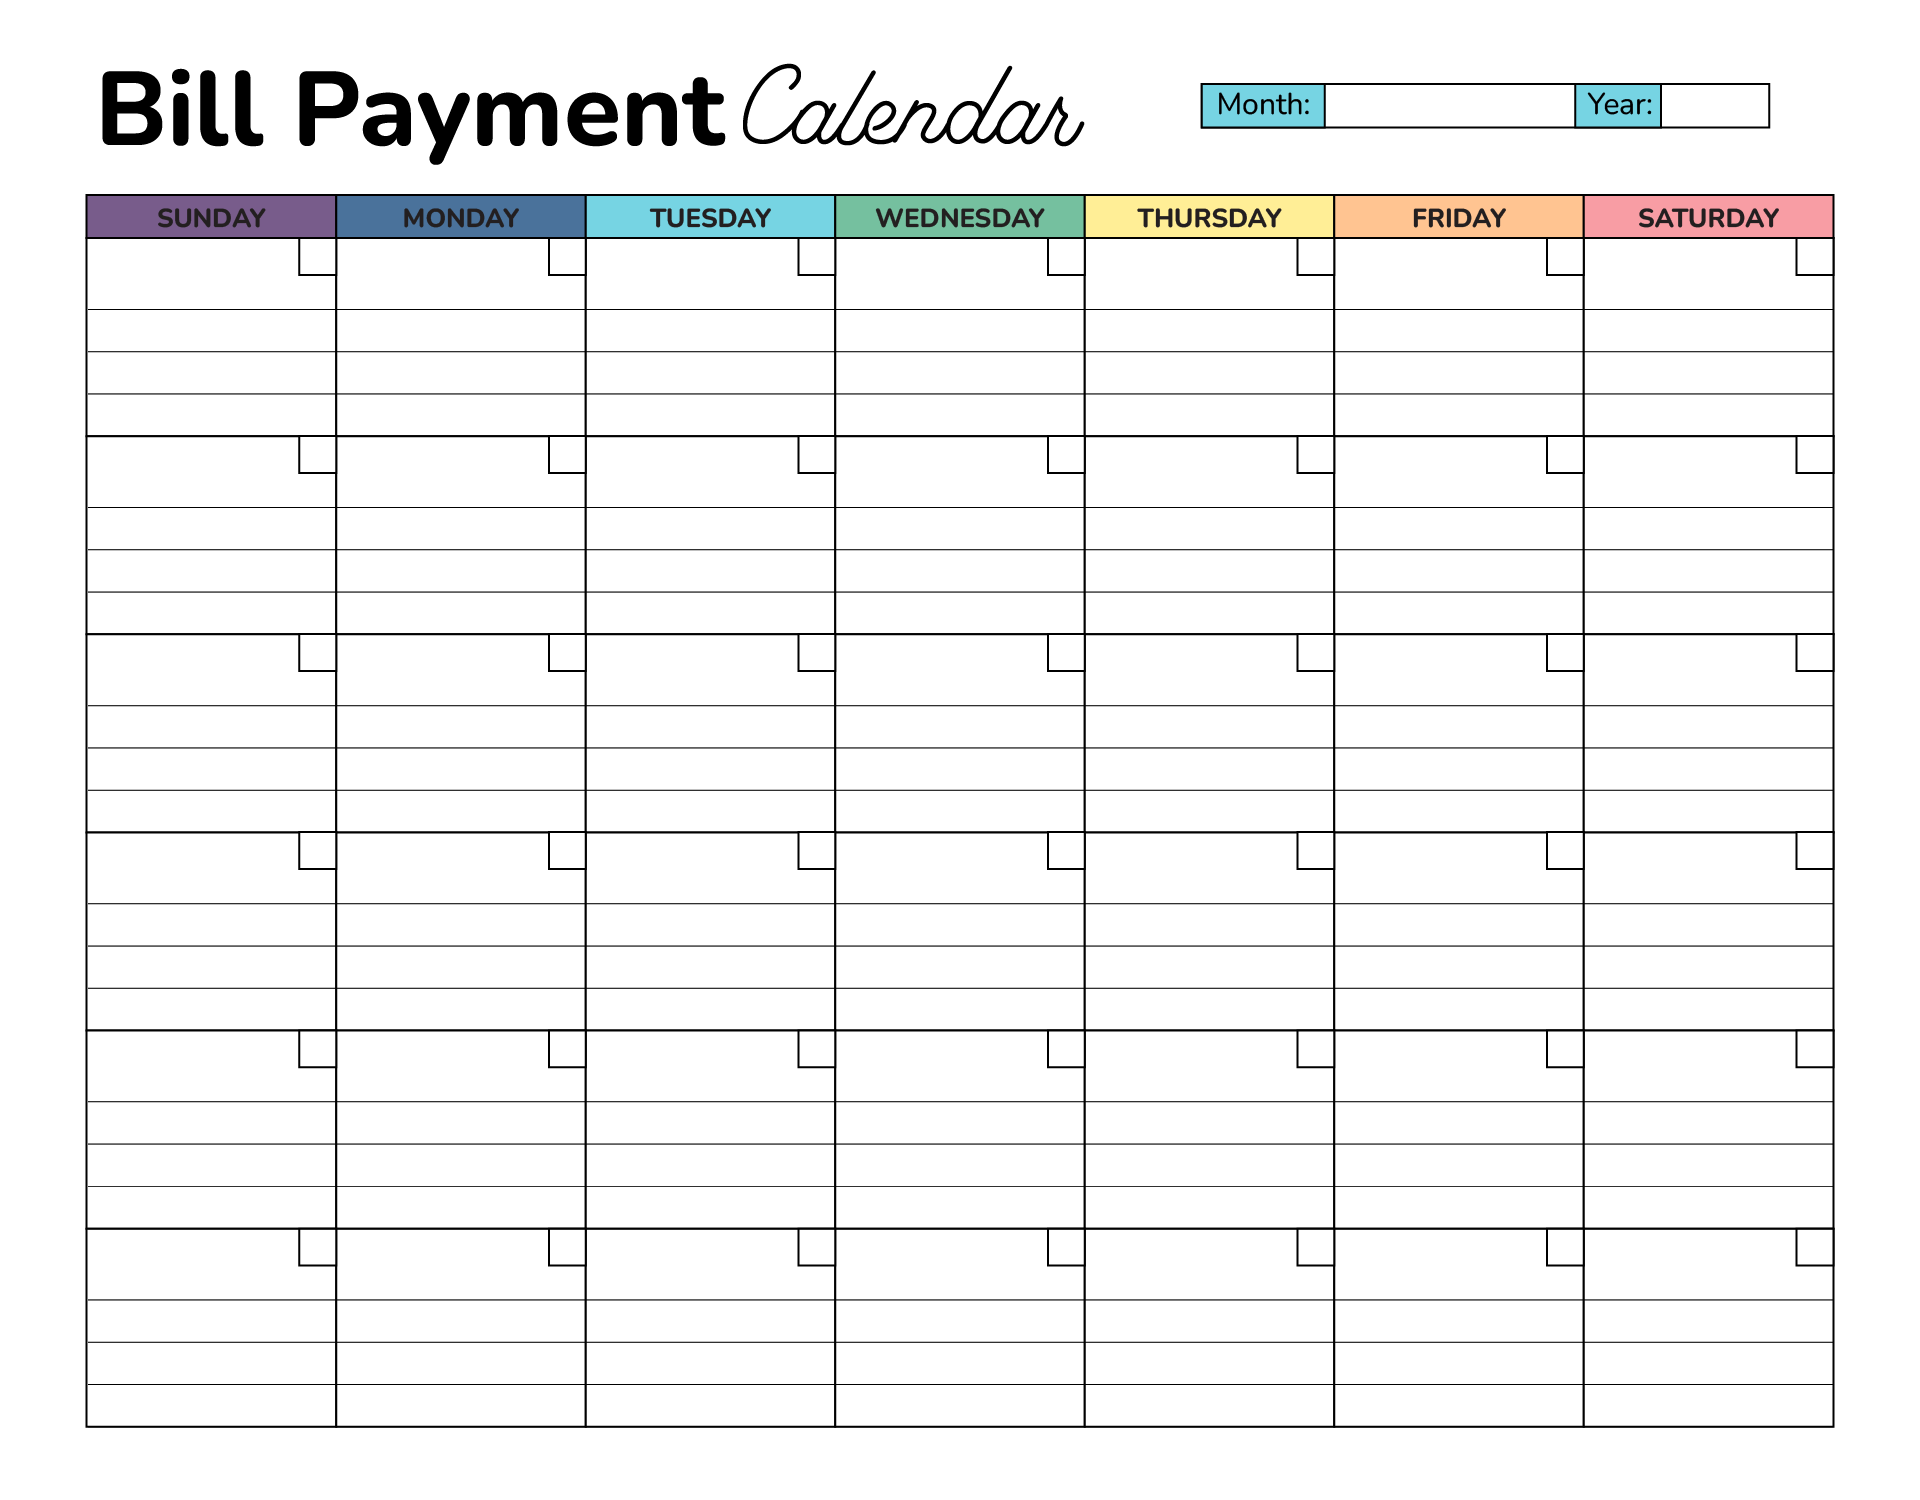 Bill Payment Calendar Graphic